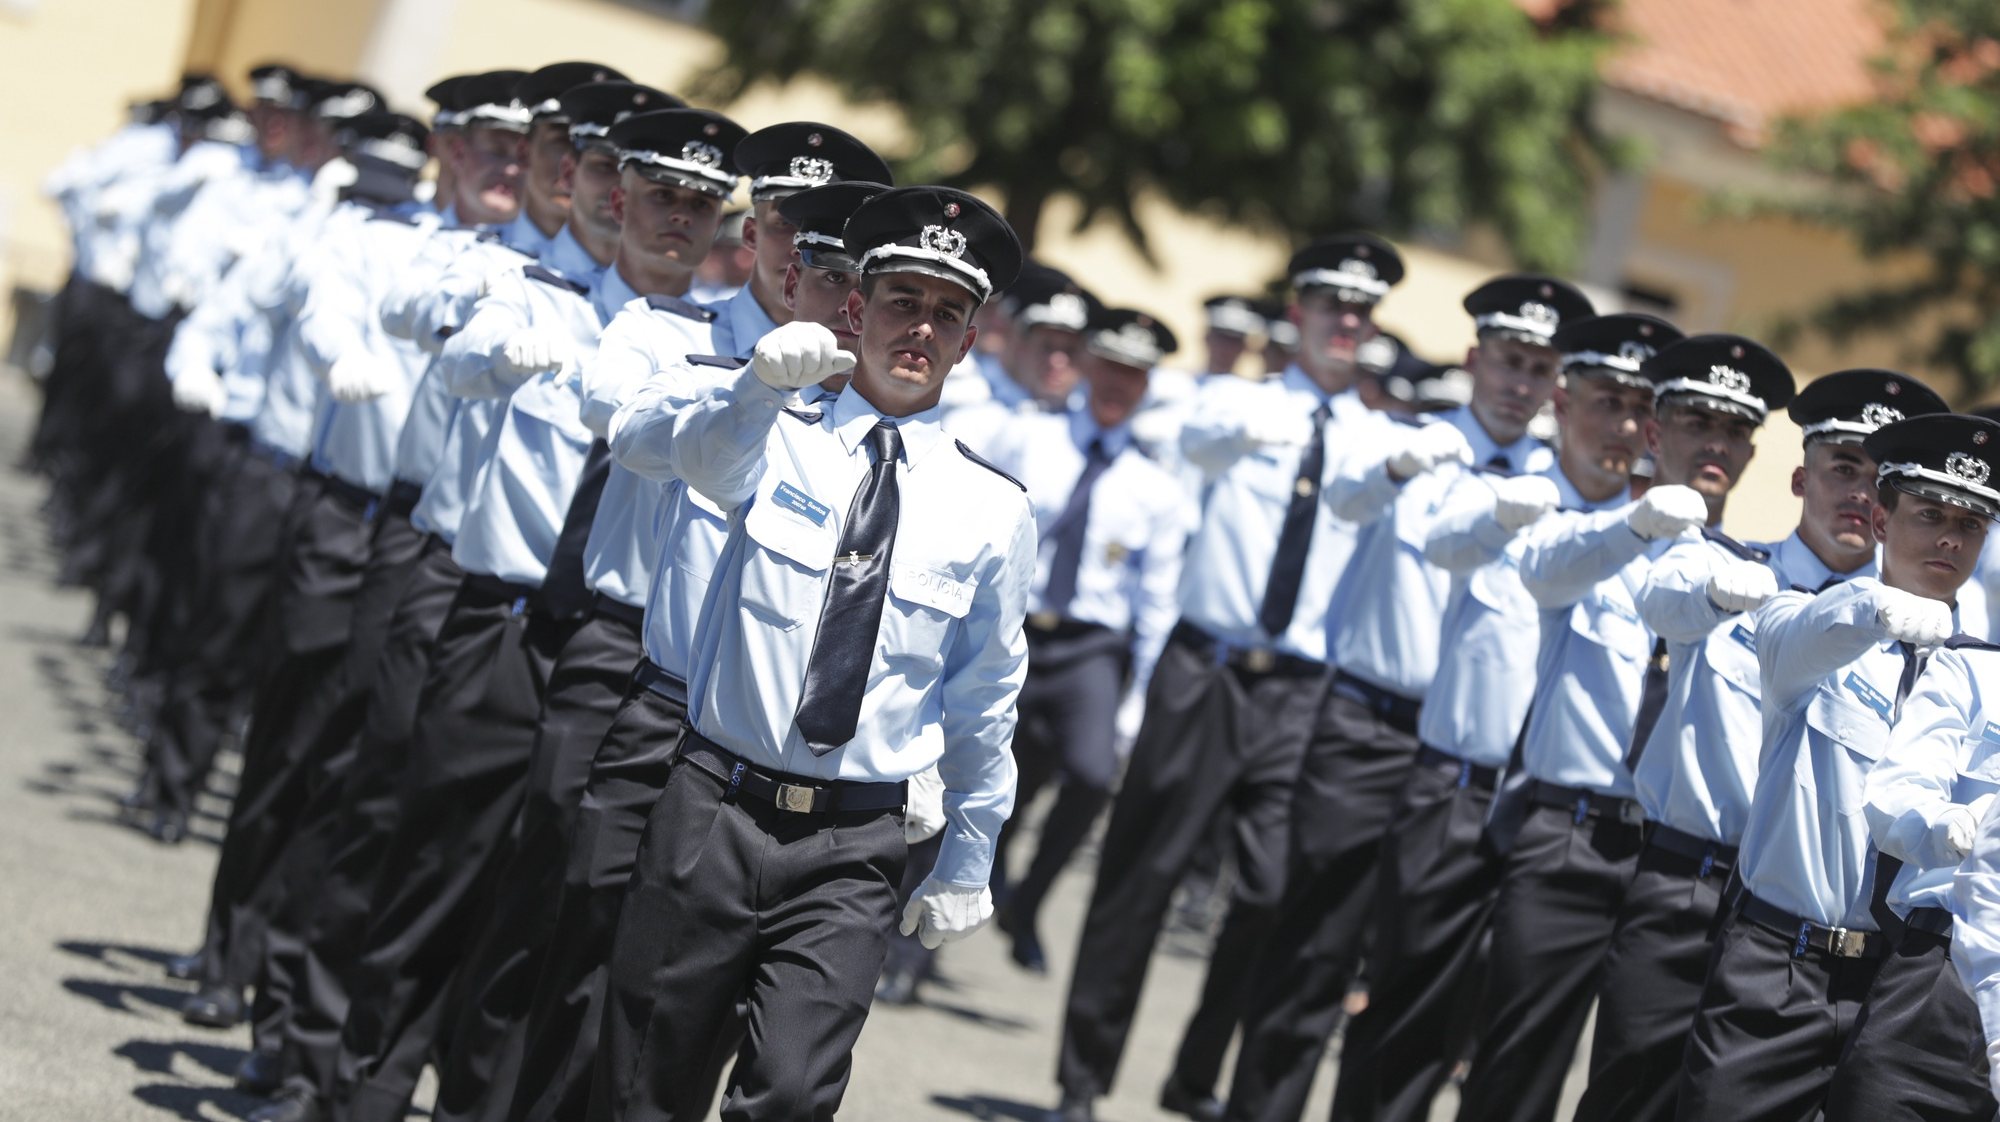 Policias em formatura na cerimónia comemorativa do 157.º aniversário da Polícia de Segurança Pública (PSP), bem como a cerimónia do compromisso de honra dos polícias que terminam o 19.º Curso de Formação de Agentes (CFA), 2 julho 2024 em Torres Novas. PAULO CUNHA/LUSA